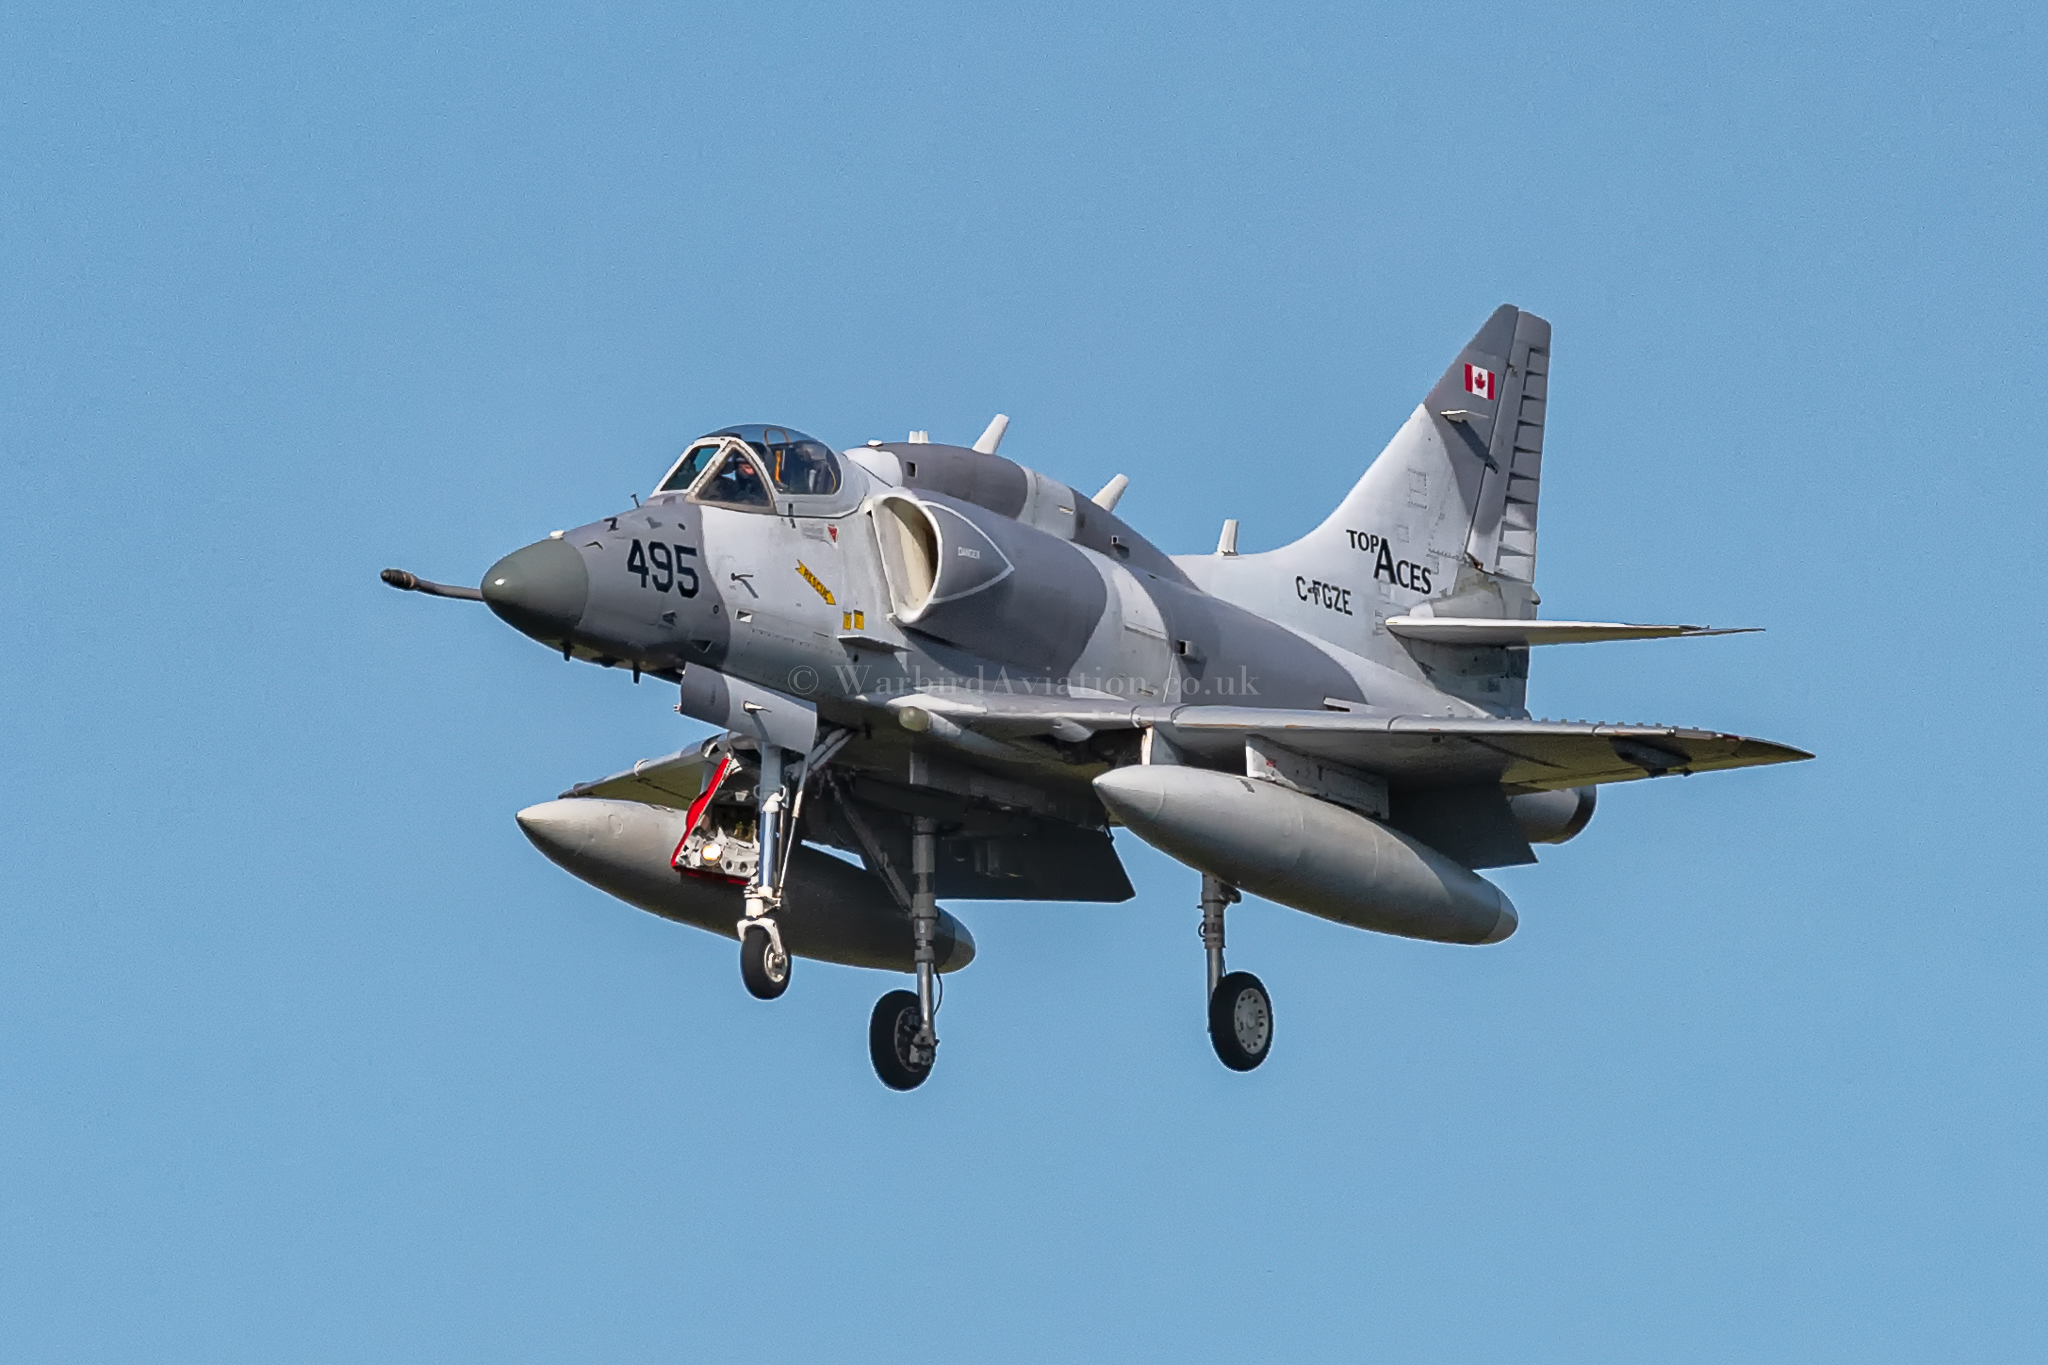 Top Aces Skyhawk C-FGZE/495